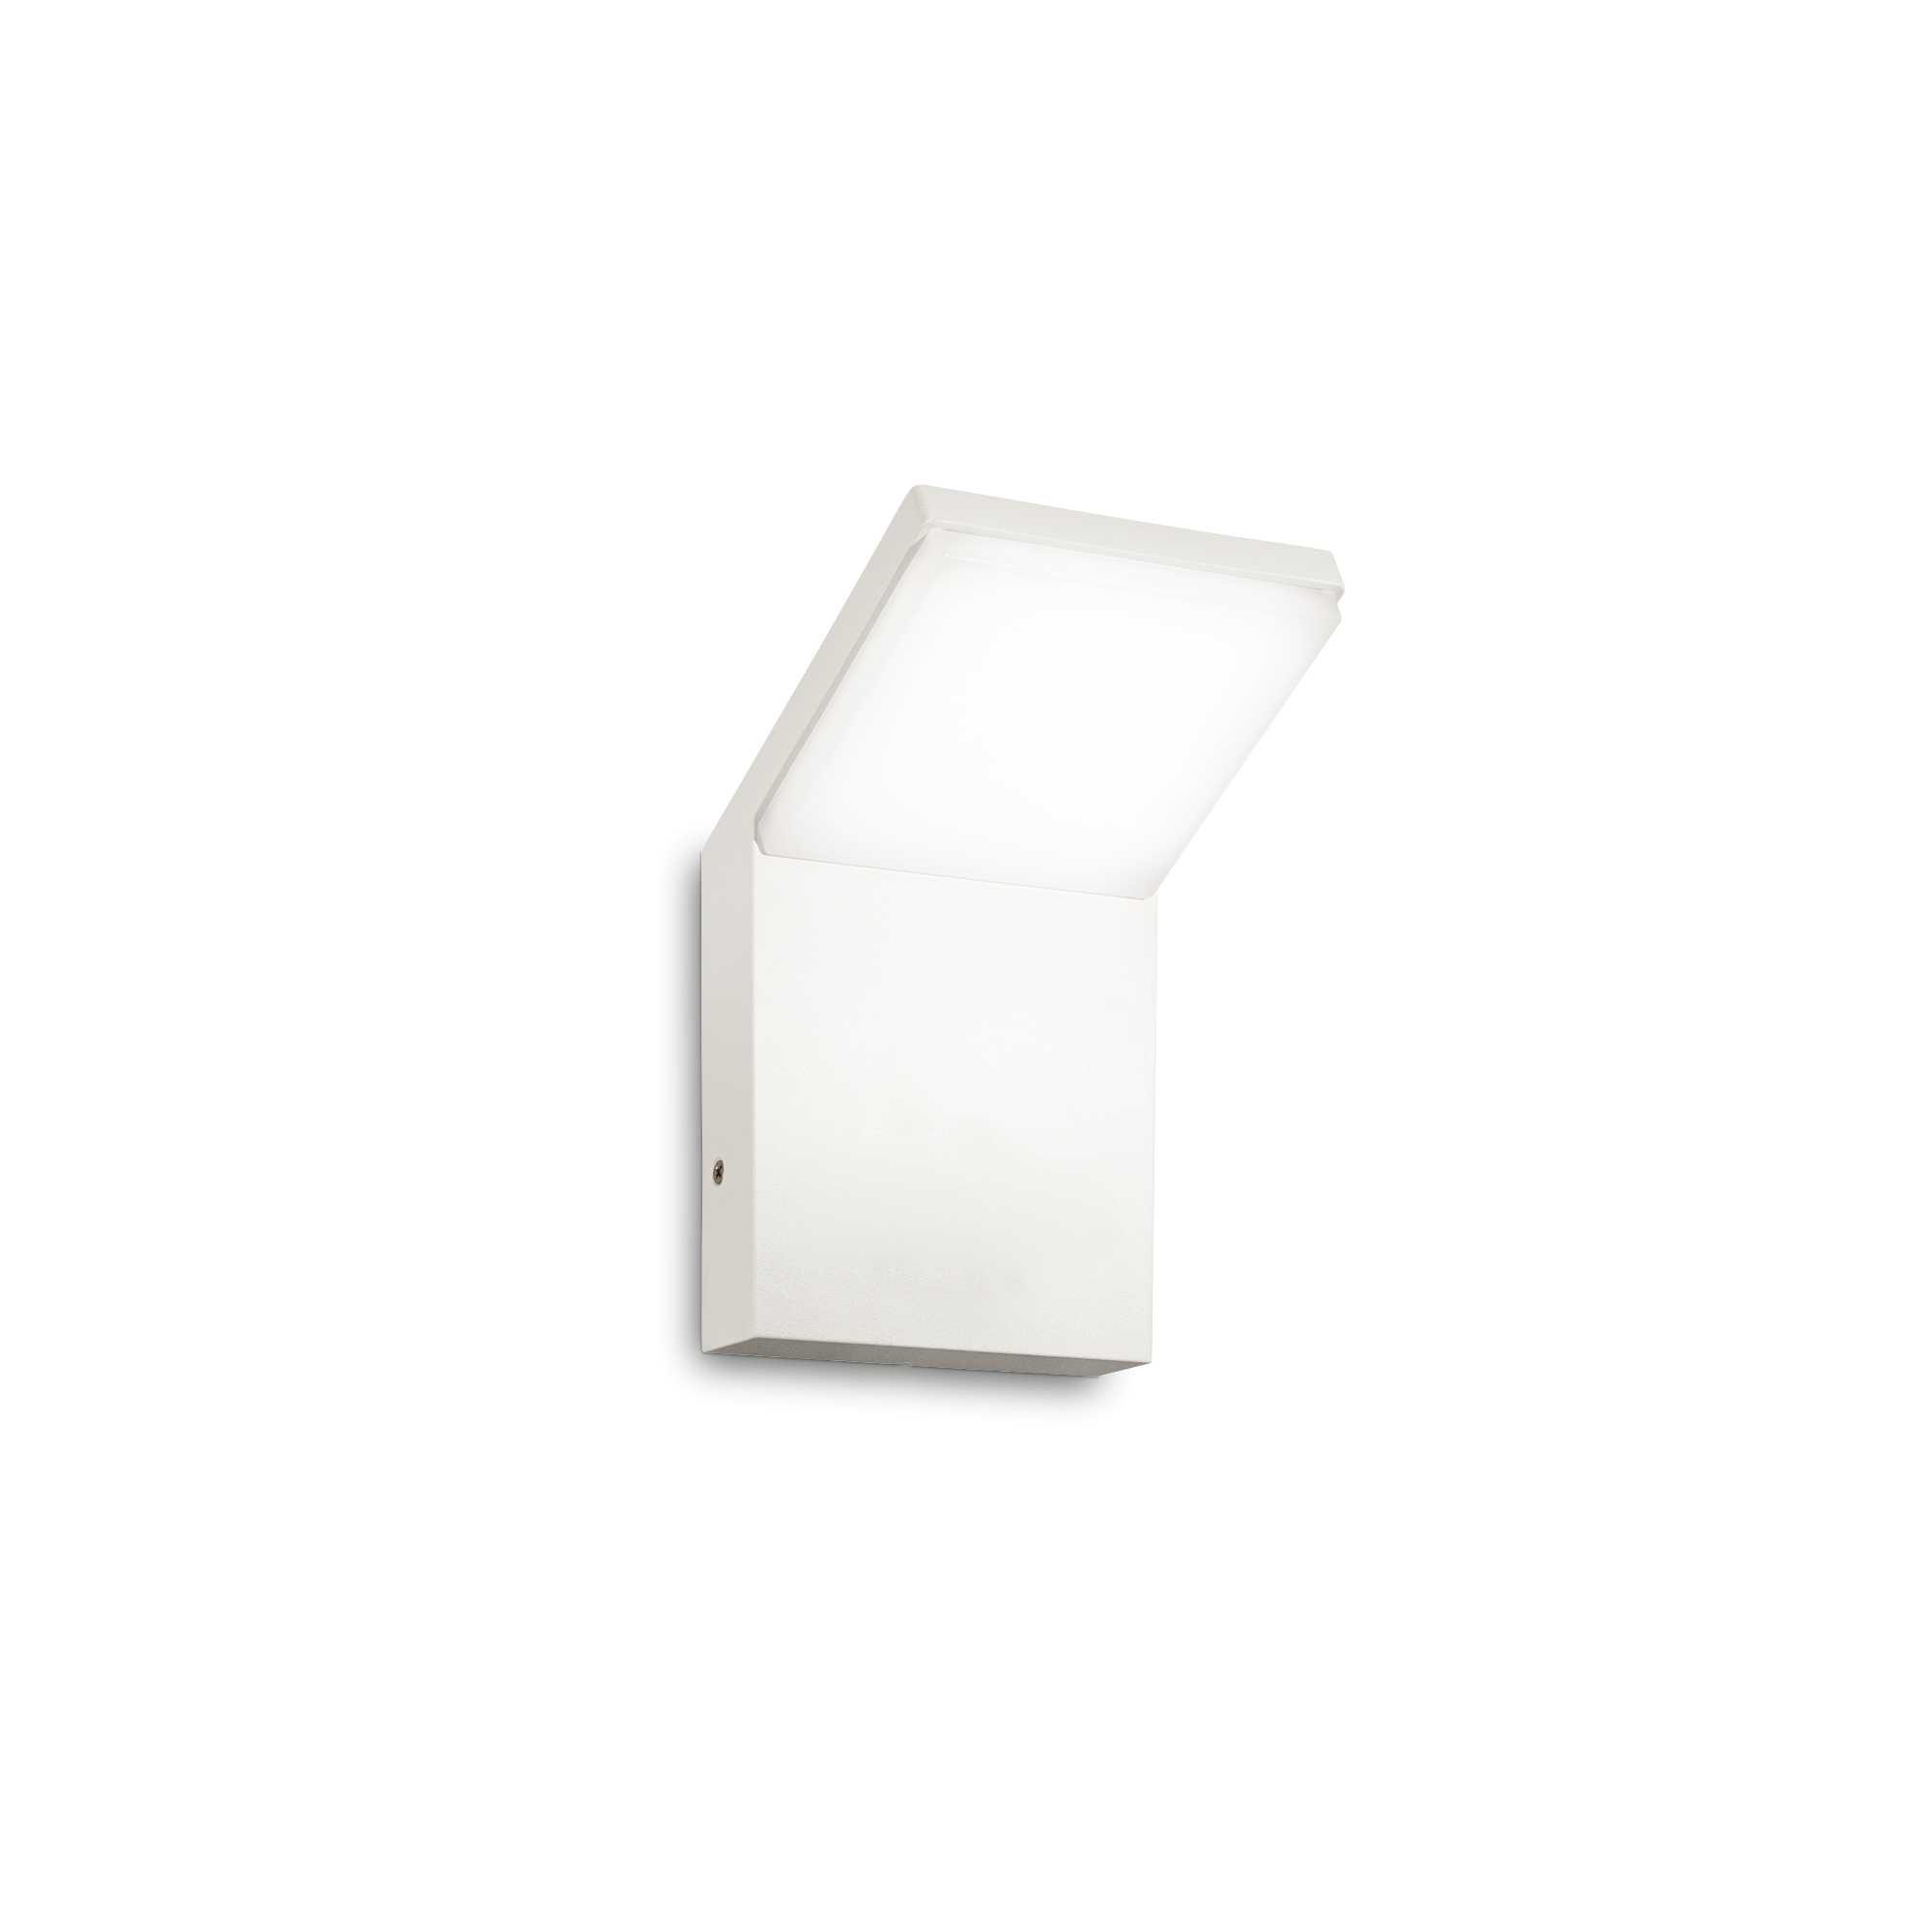 AD hotelska oprema Vanjska zidna lampa Style ap (3000k)- Bijele boje slika proizvoda